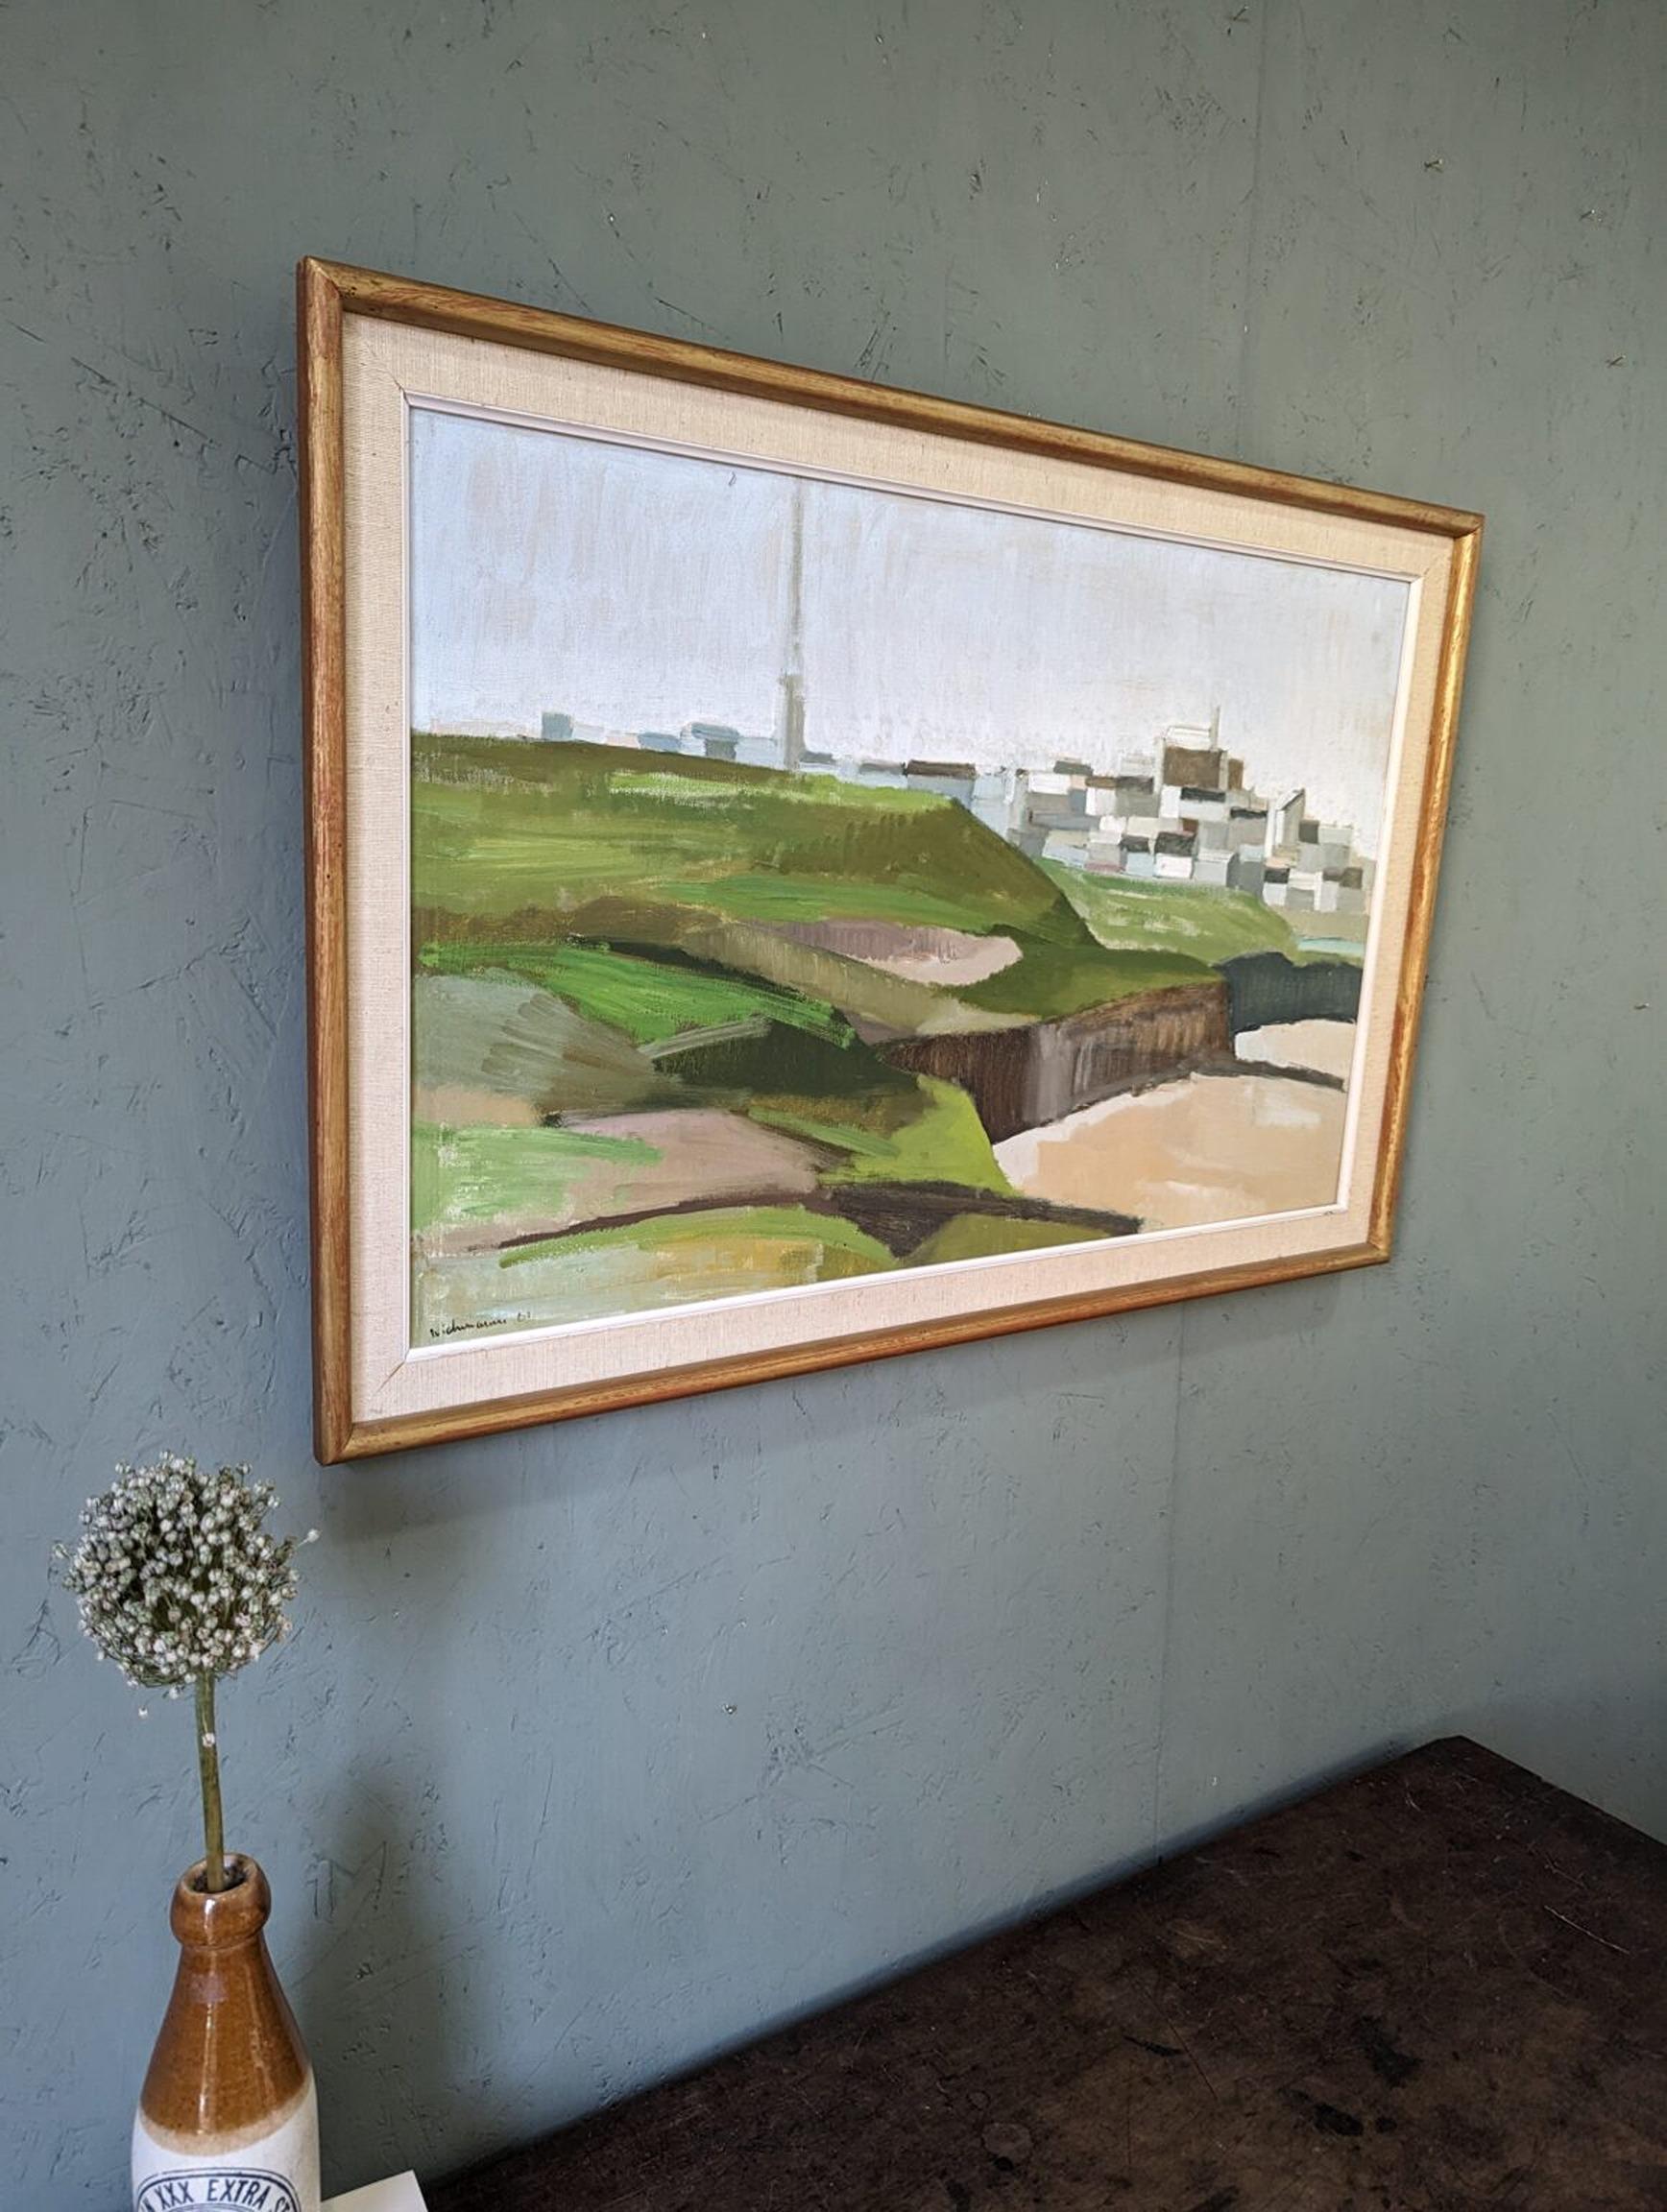 BRETAGNE
Dimensions : 49 x 73 cm (cadre compris)
Huile sur toile

Composition panoramique moderniste du milieu du siècle à l'huile, peinte sur toile et datée de 1961.

Capturant le littoral spectaculaire de la péninsule française de Bretagne, cette